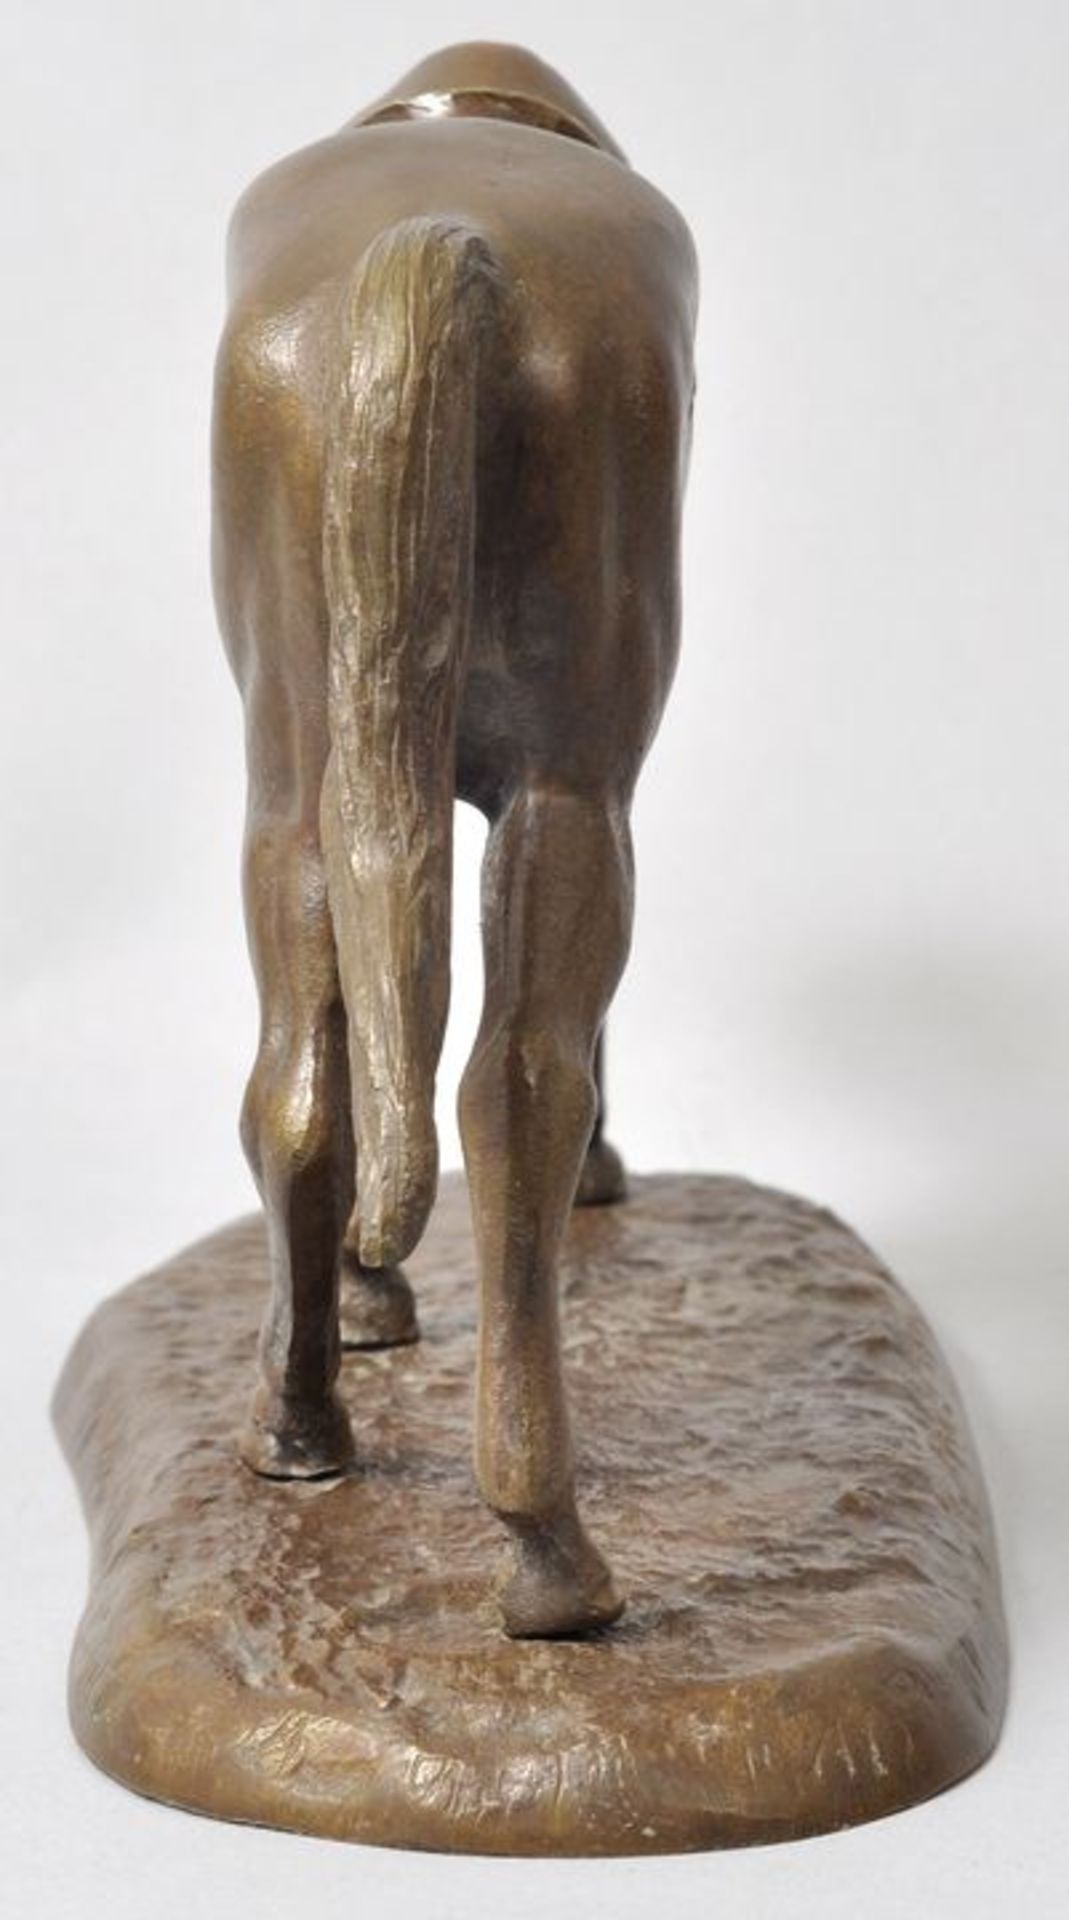 Unbekannt, Anf. 20. Jh. Rennpferd, gehend. Bronze, patiniert, H. 14,5 cm - Bild 7 aus 7